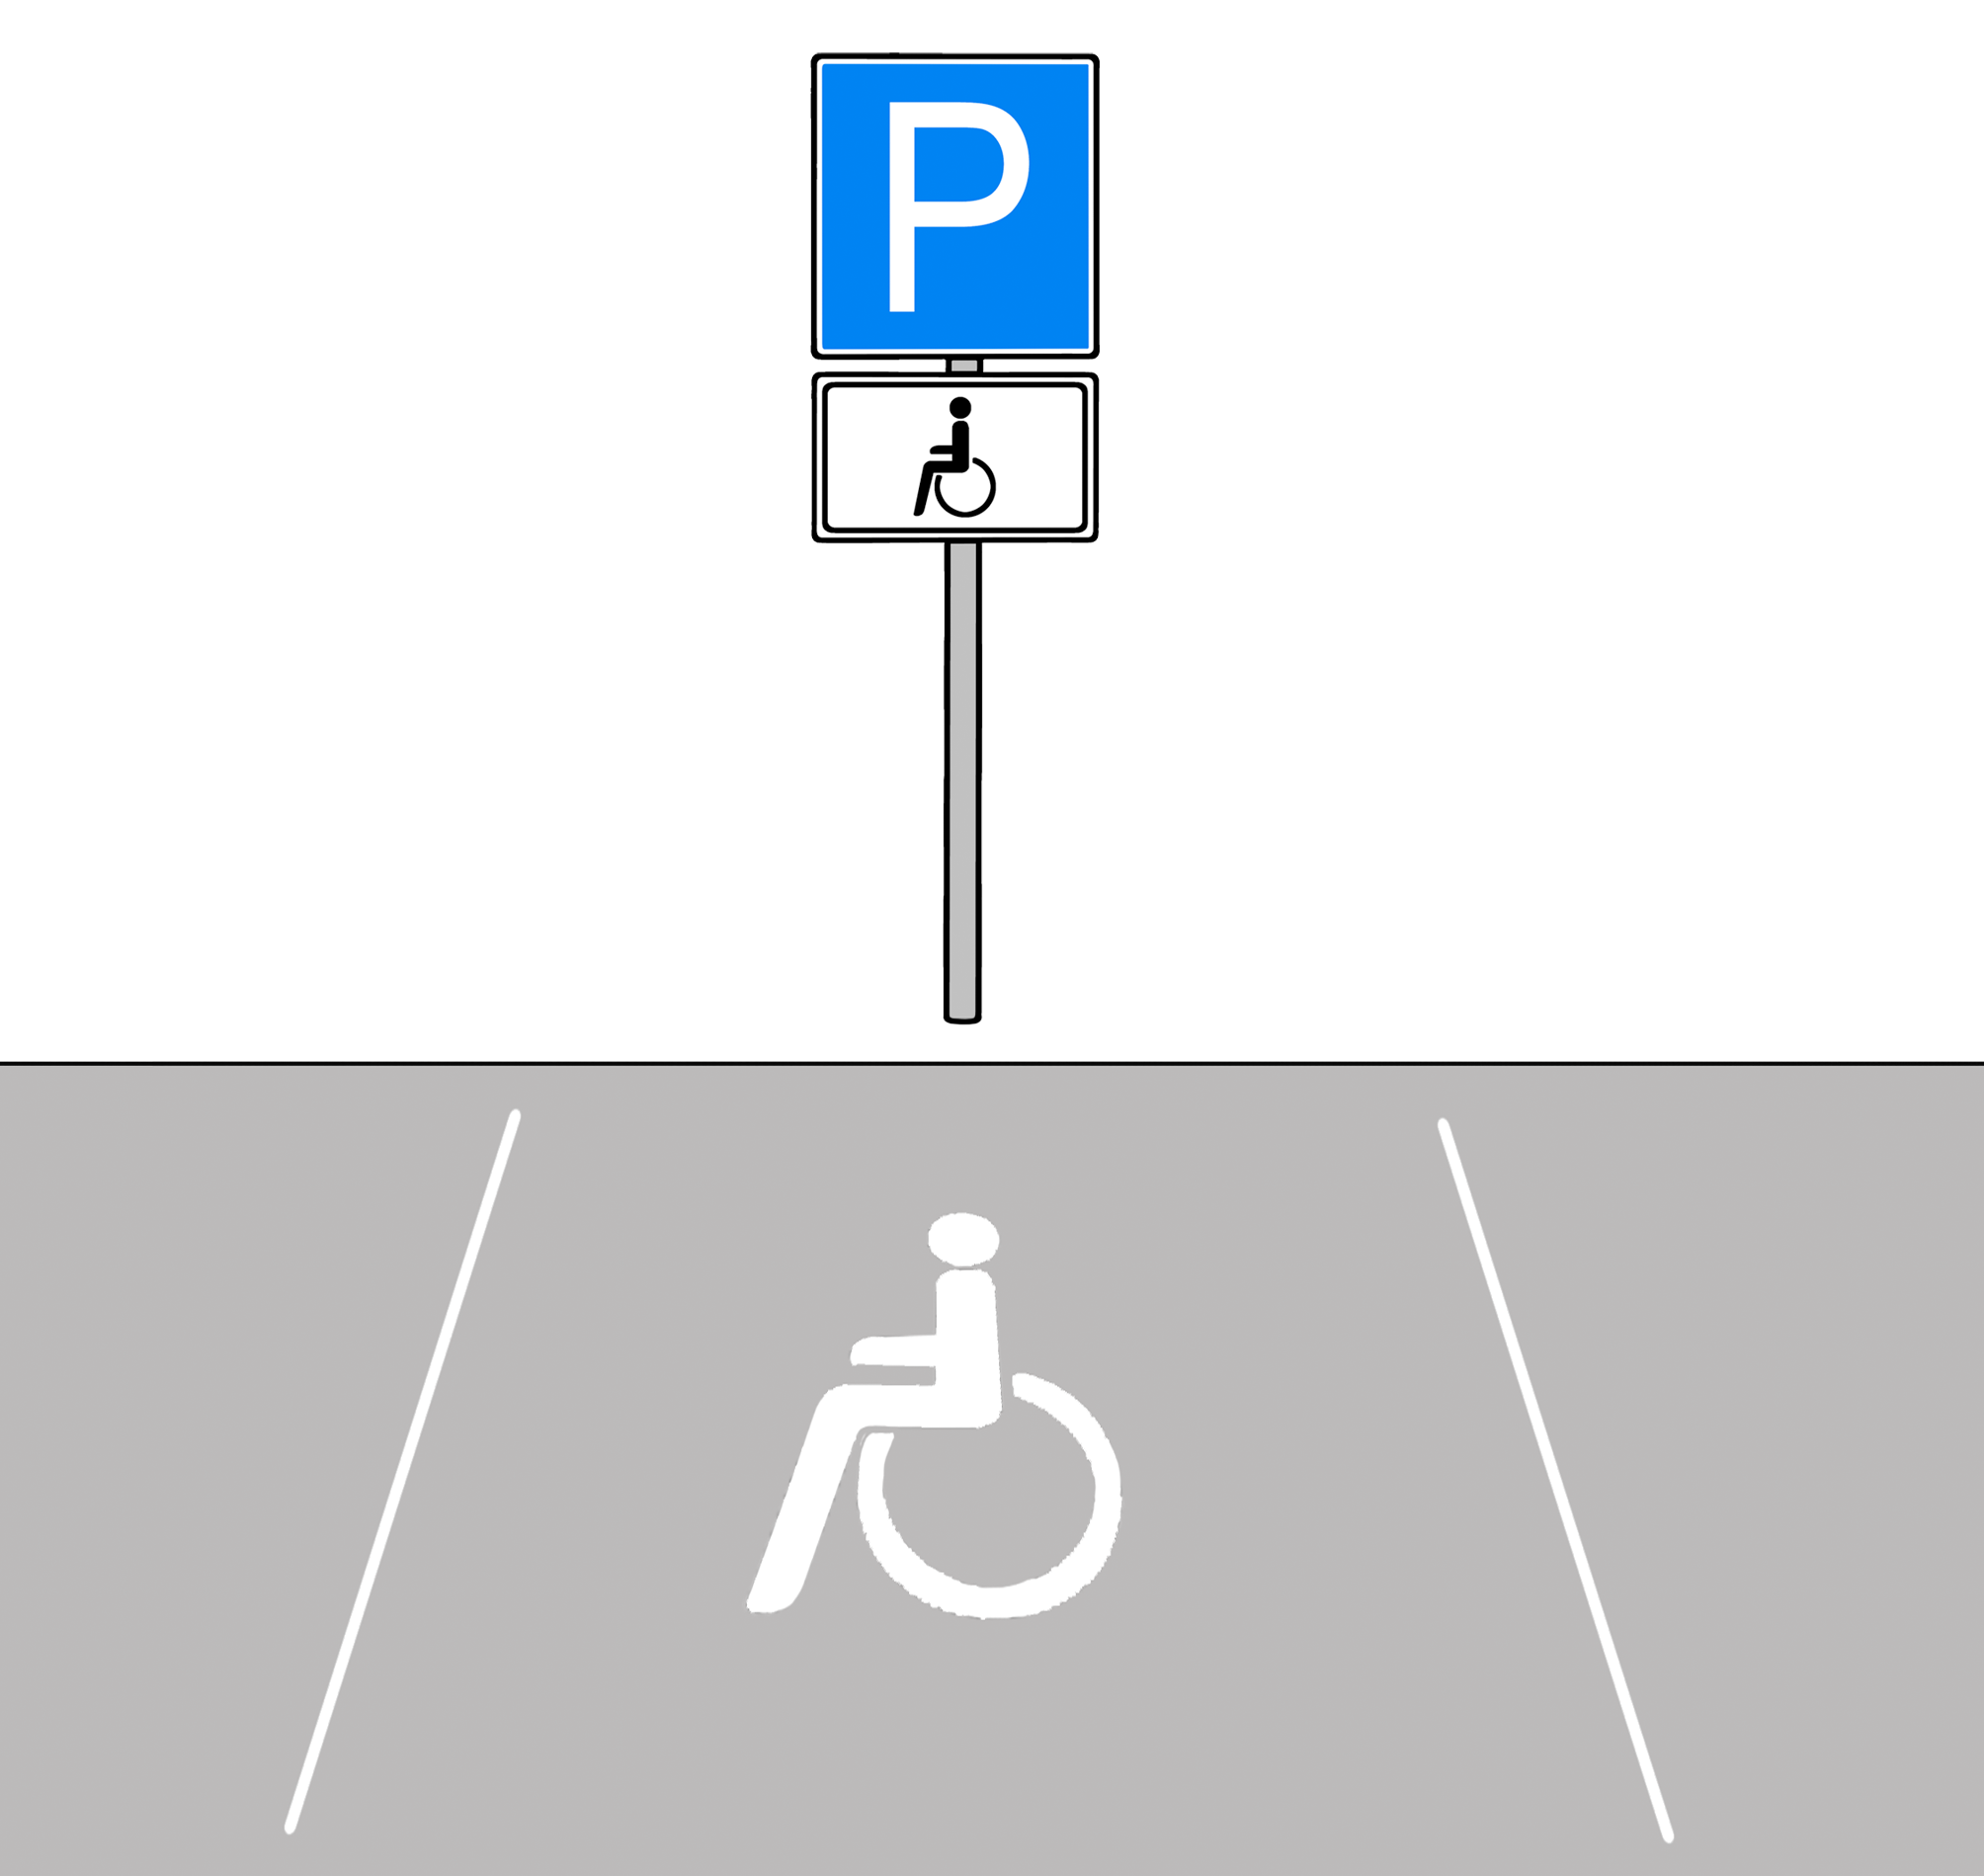 Leichte Sprache Bild: Ein Parkplatz mit dem Symbol eines Rollstuhfahrers auf dem Boden und auf einem Schild